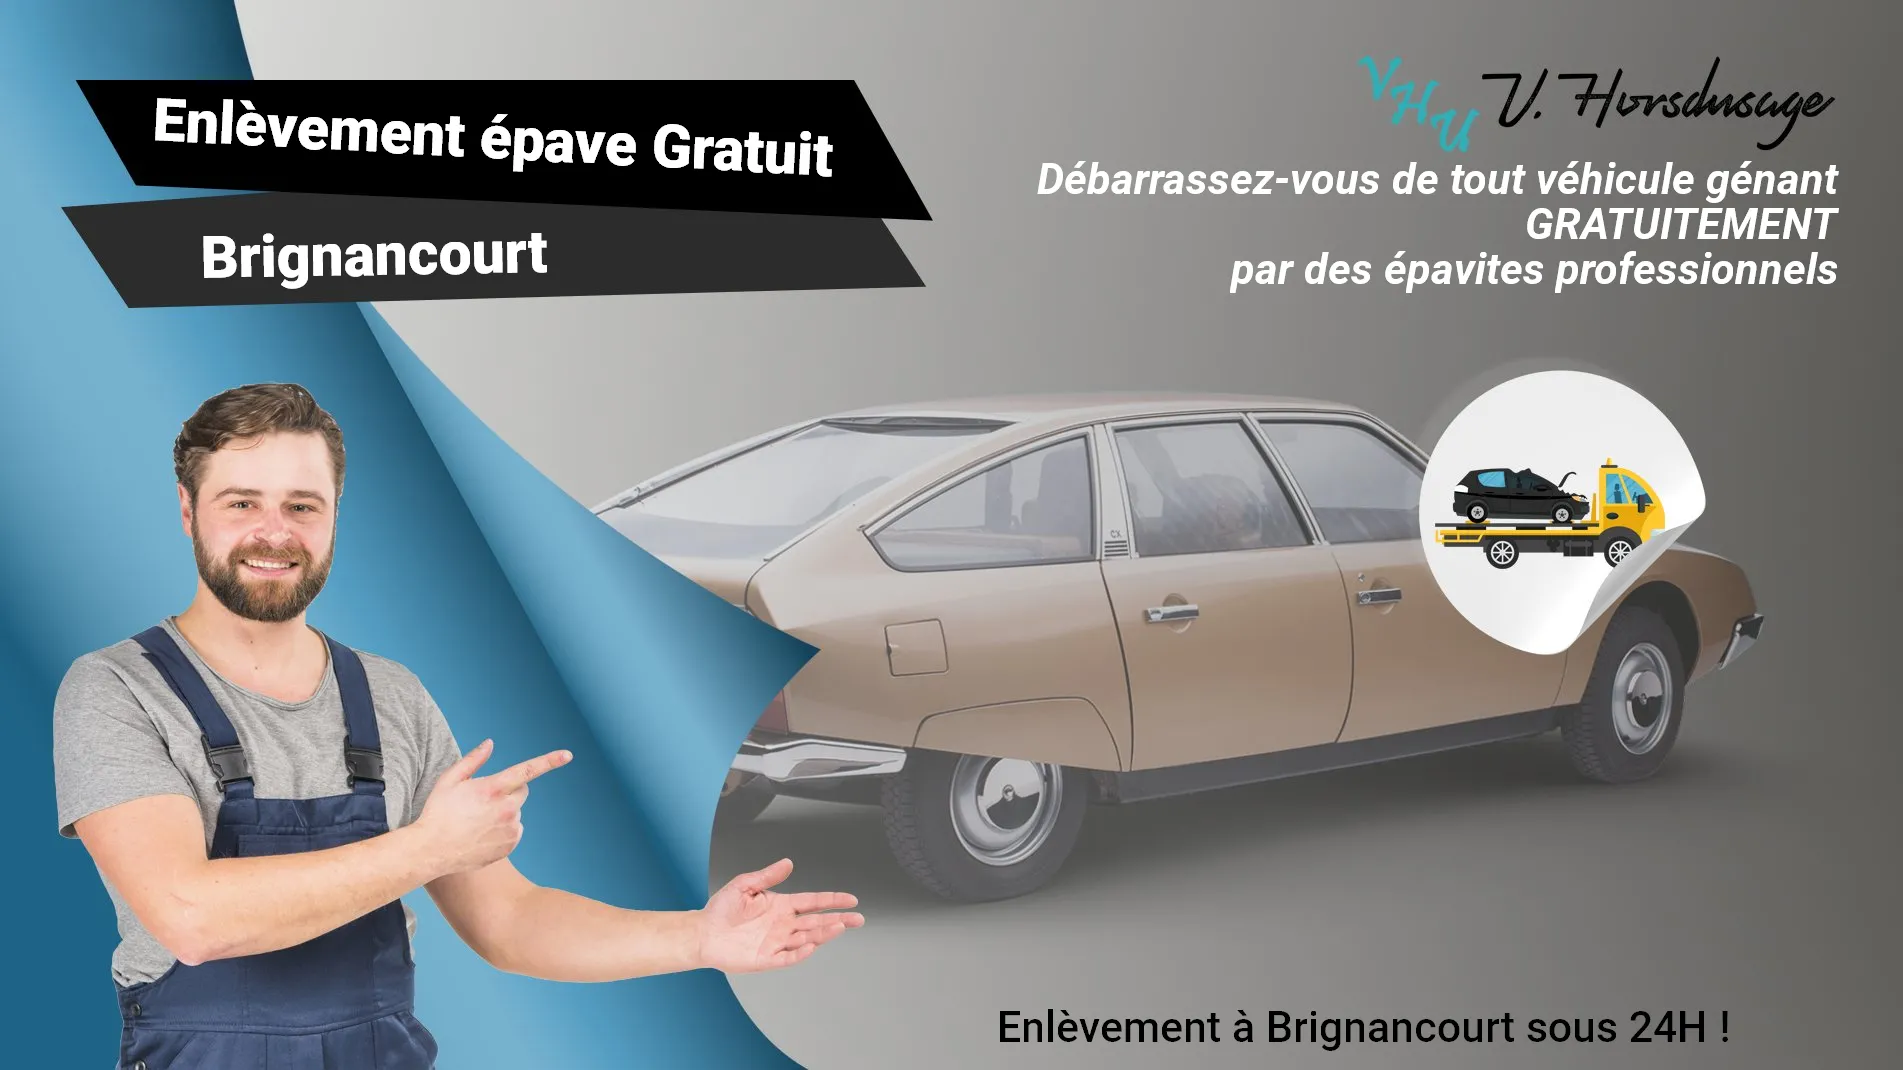 Pour un enlèvement gratuit à Brignancourt, contactez nos épavistes agréé VHU